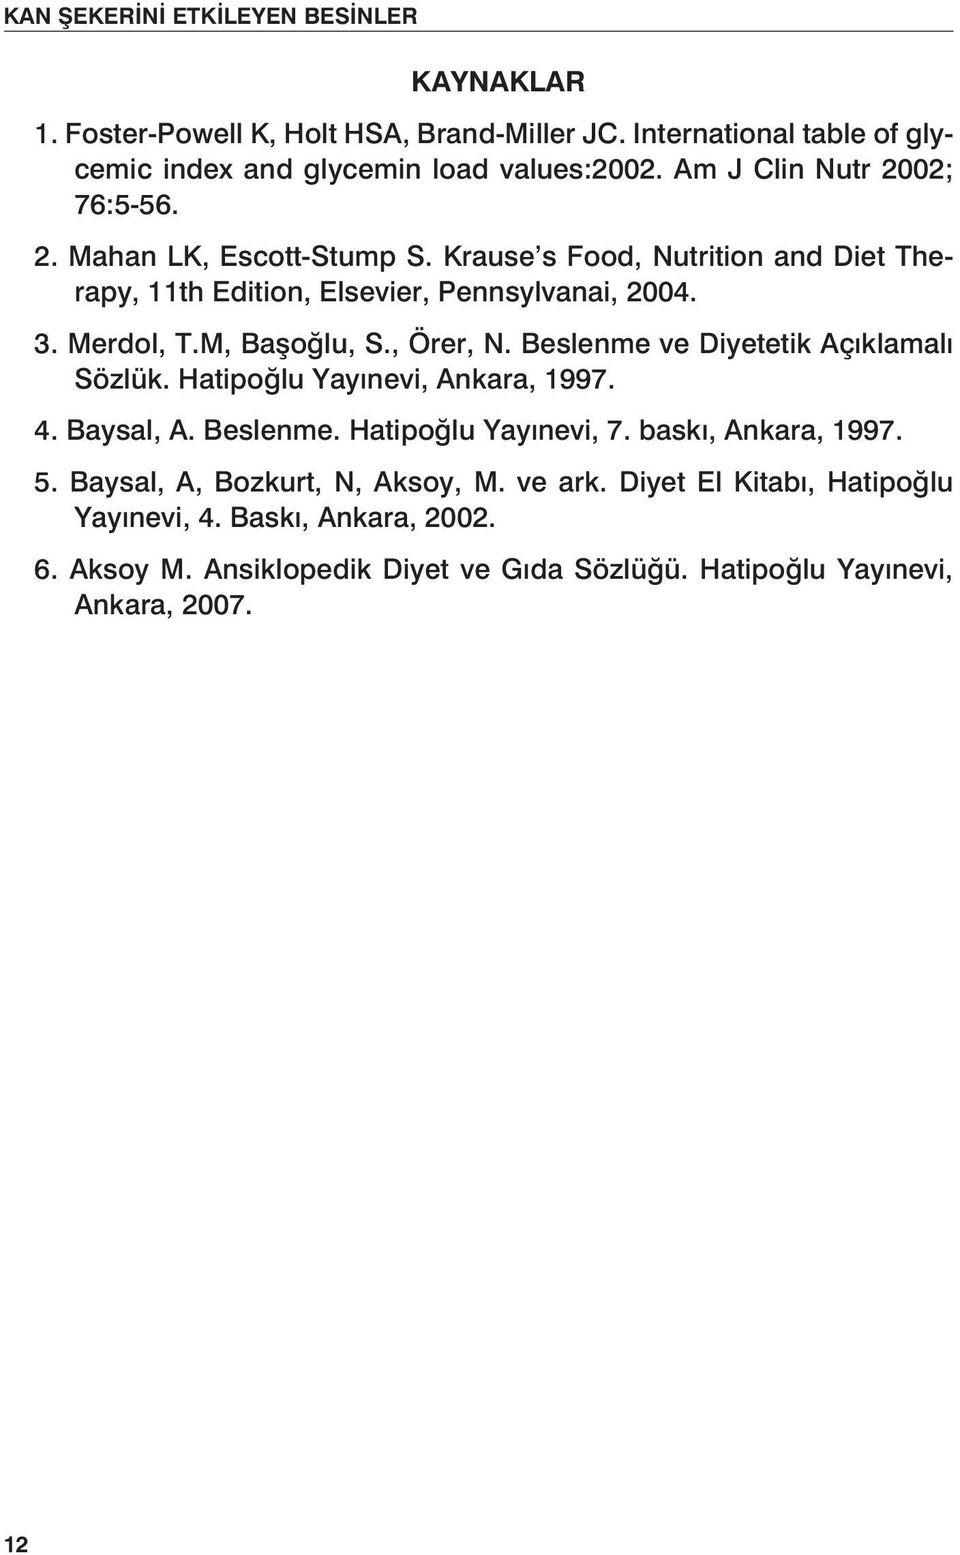 M, Başoğlu, S., Örer, N. Beslenme ve Diyetetik Açıklamalı Sözlük. Hatipoğlu Yayınevi, Ankara, 1997. 4. Baysal, A. Beslenme. Hatipoğlu Yayınevi, 7. baskı, Ankara, 1997.